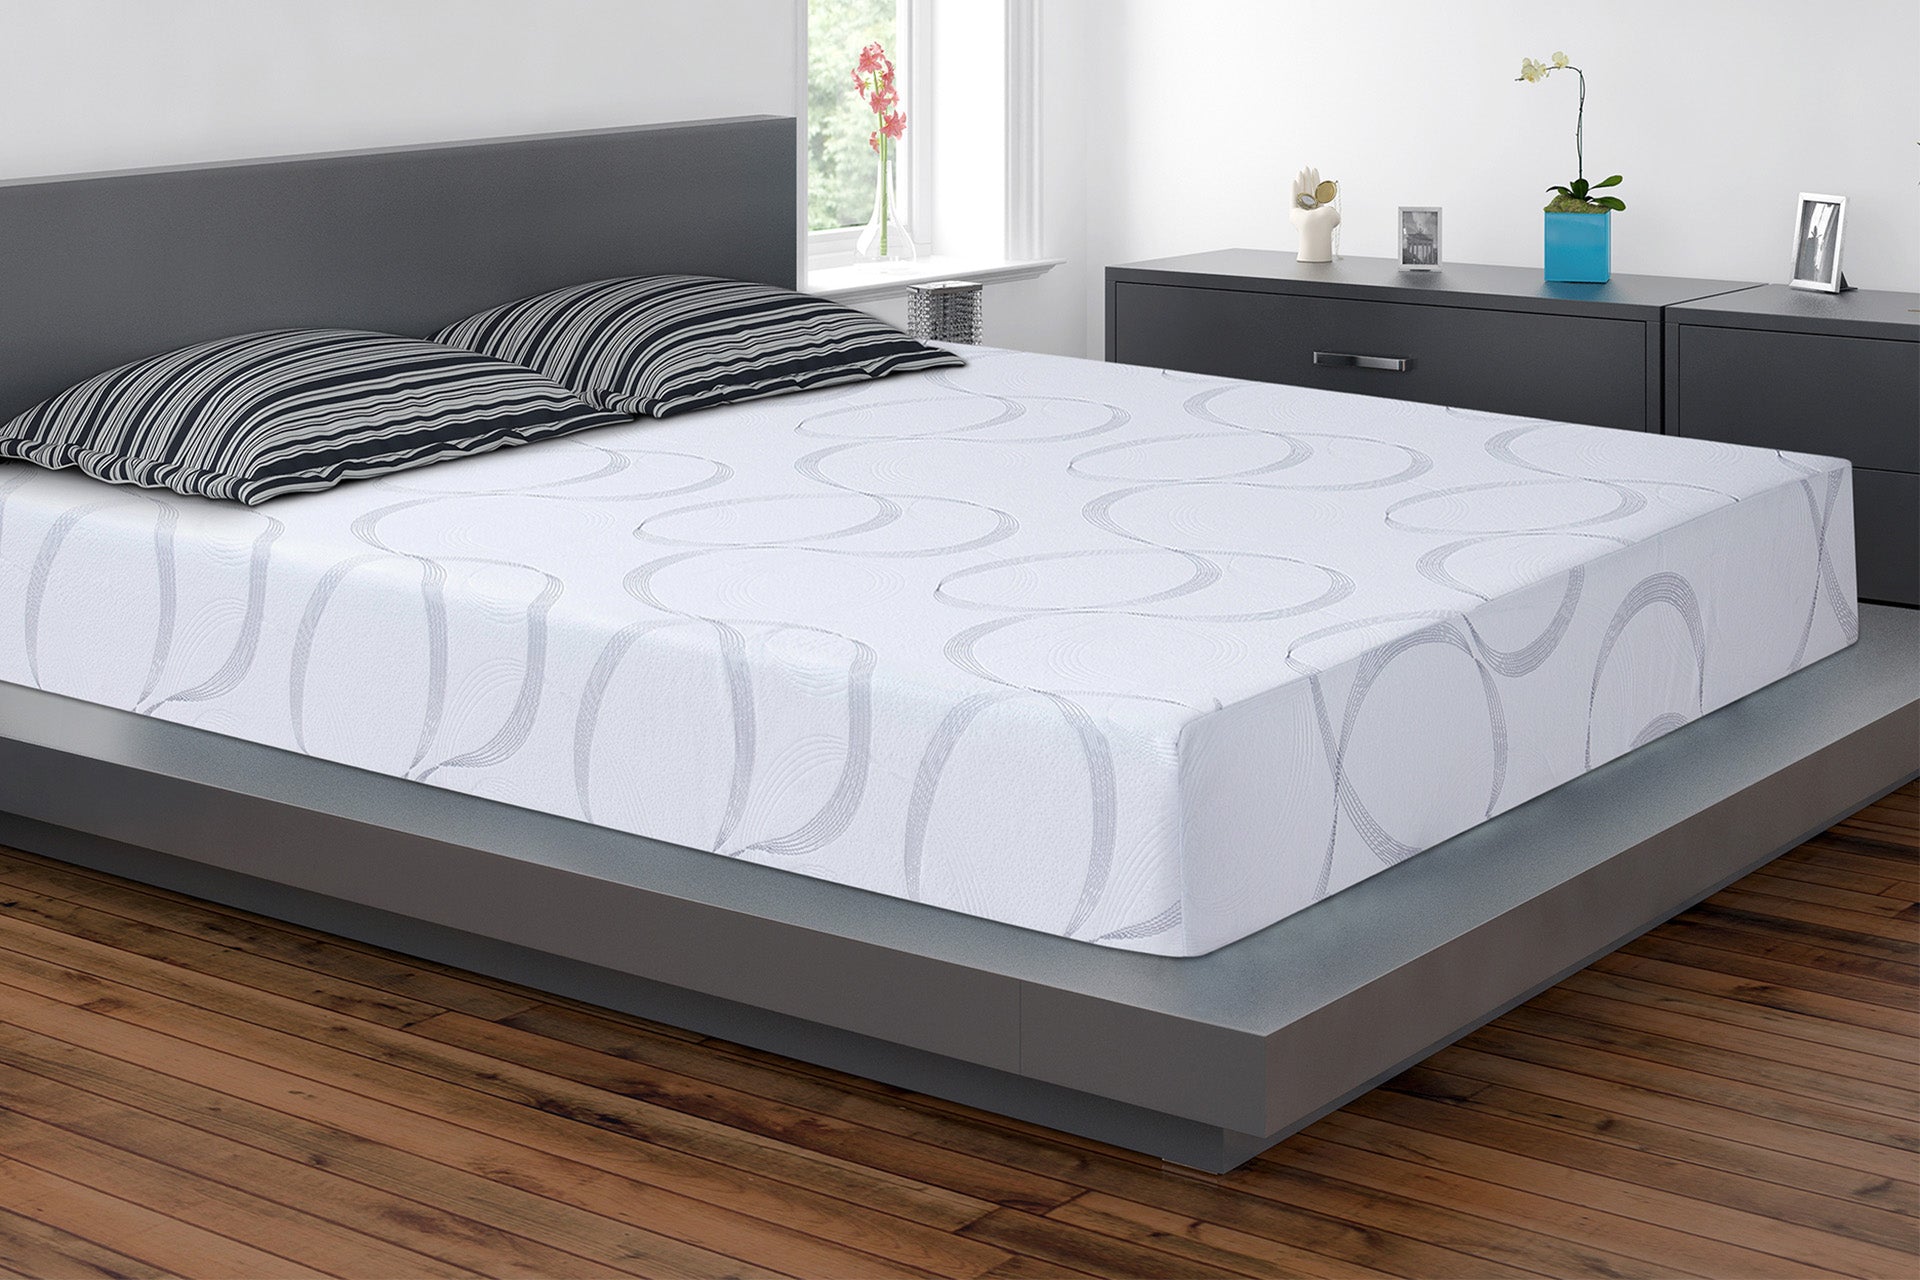 do u need a boxspring witmemory foam mattress